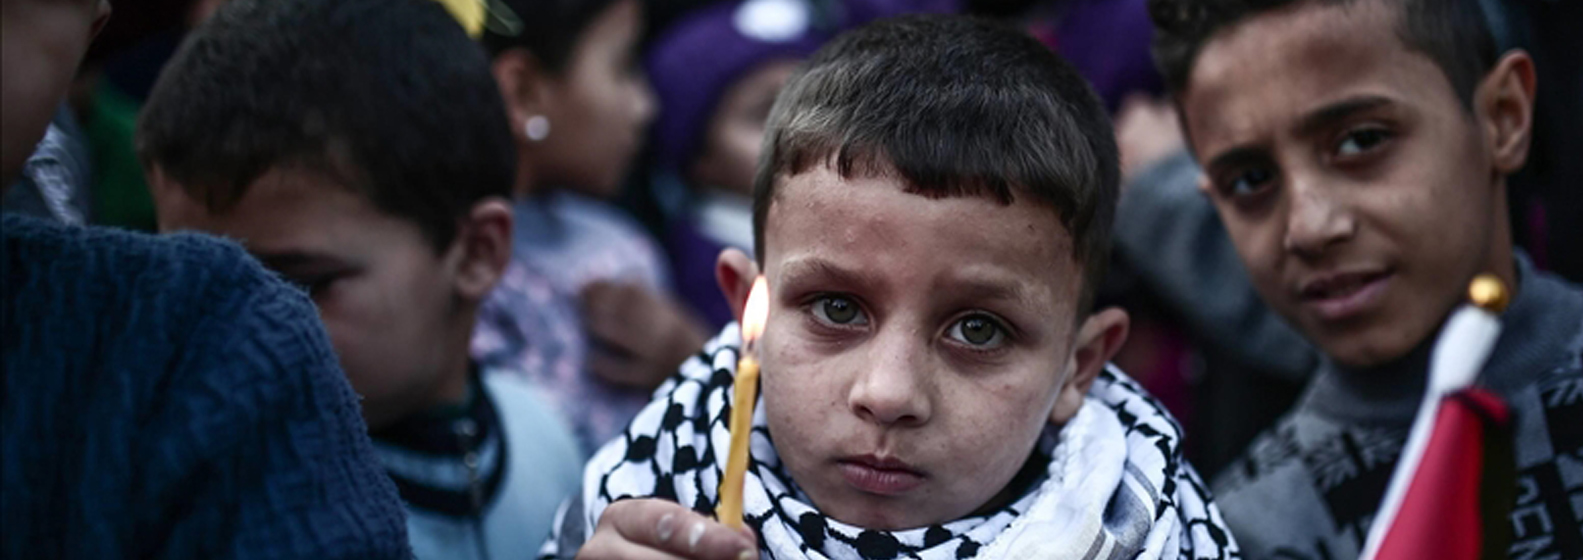 في يوم الطفل الفلسطيني  حين يتحول استهداف الأطفال من الملاذ الأخير إلى الهدف الأول ودعوة للمجتمع الدولي إلى كسر الصمت تجاه الجرائم الإسرائيلية  بحق الأطفال الفلسطينيين 